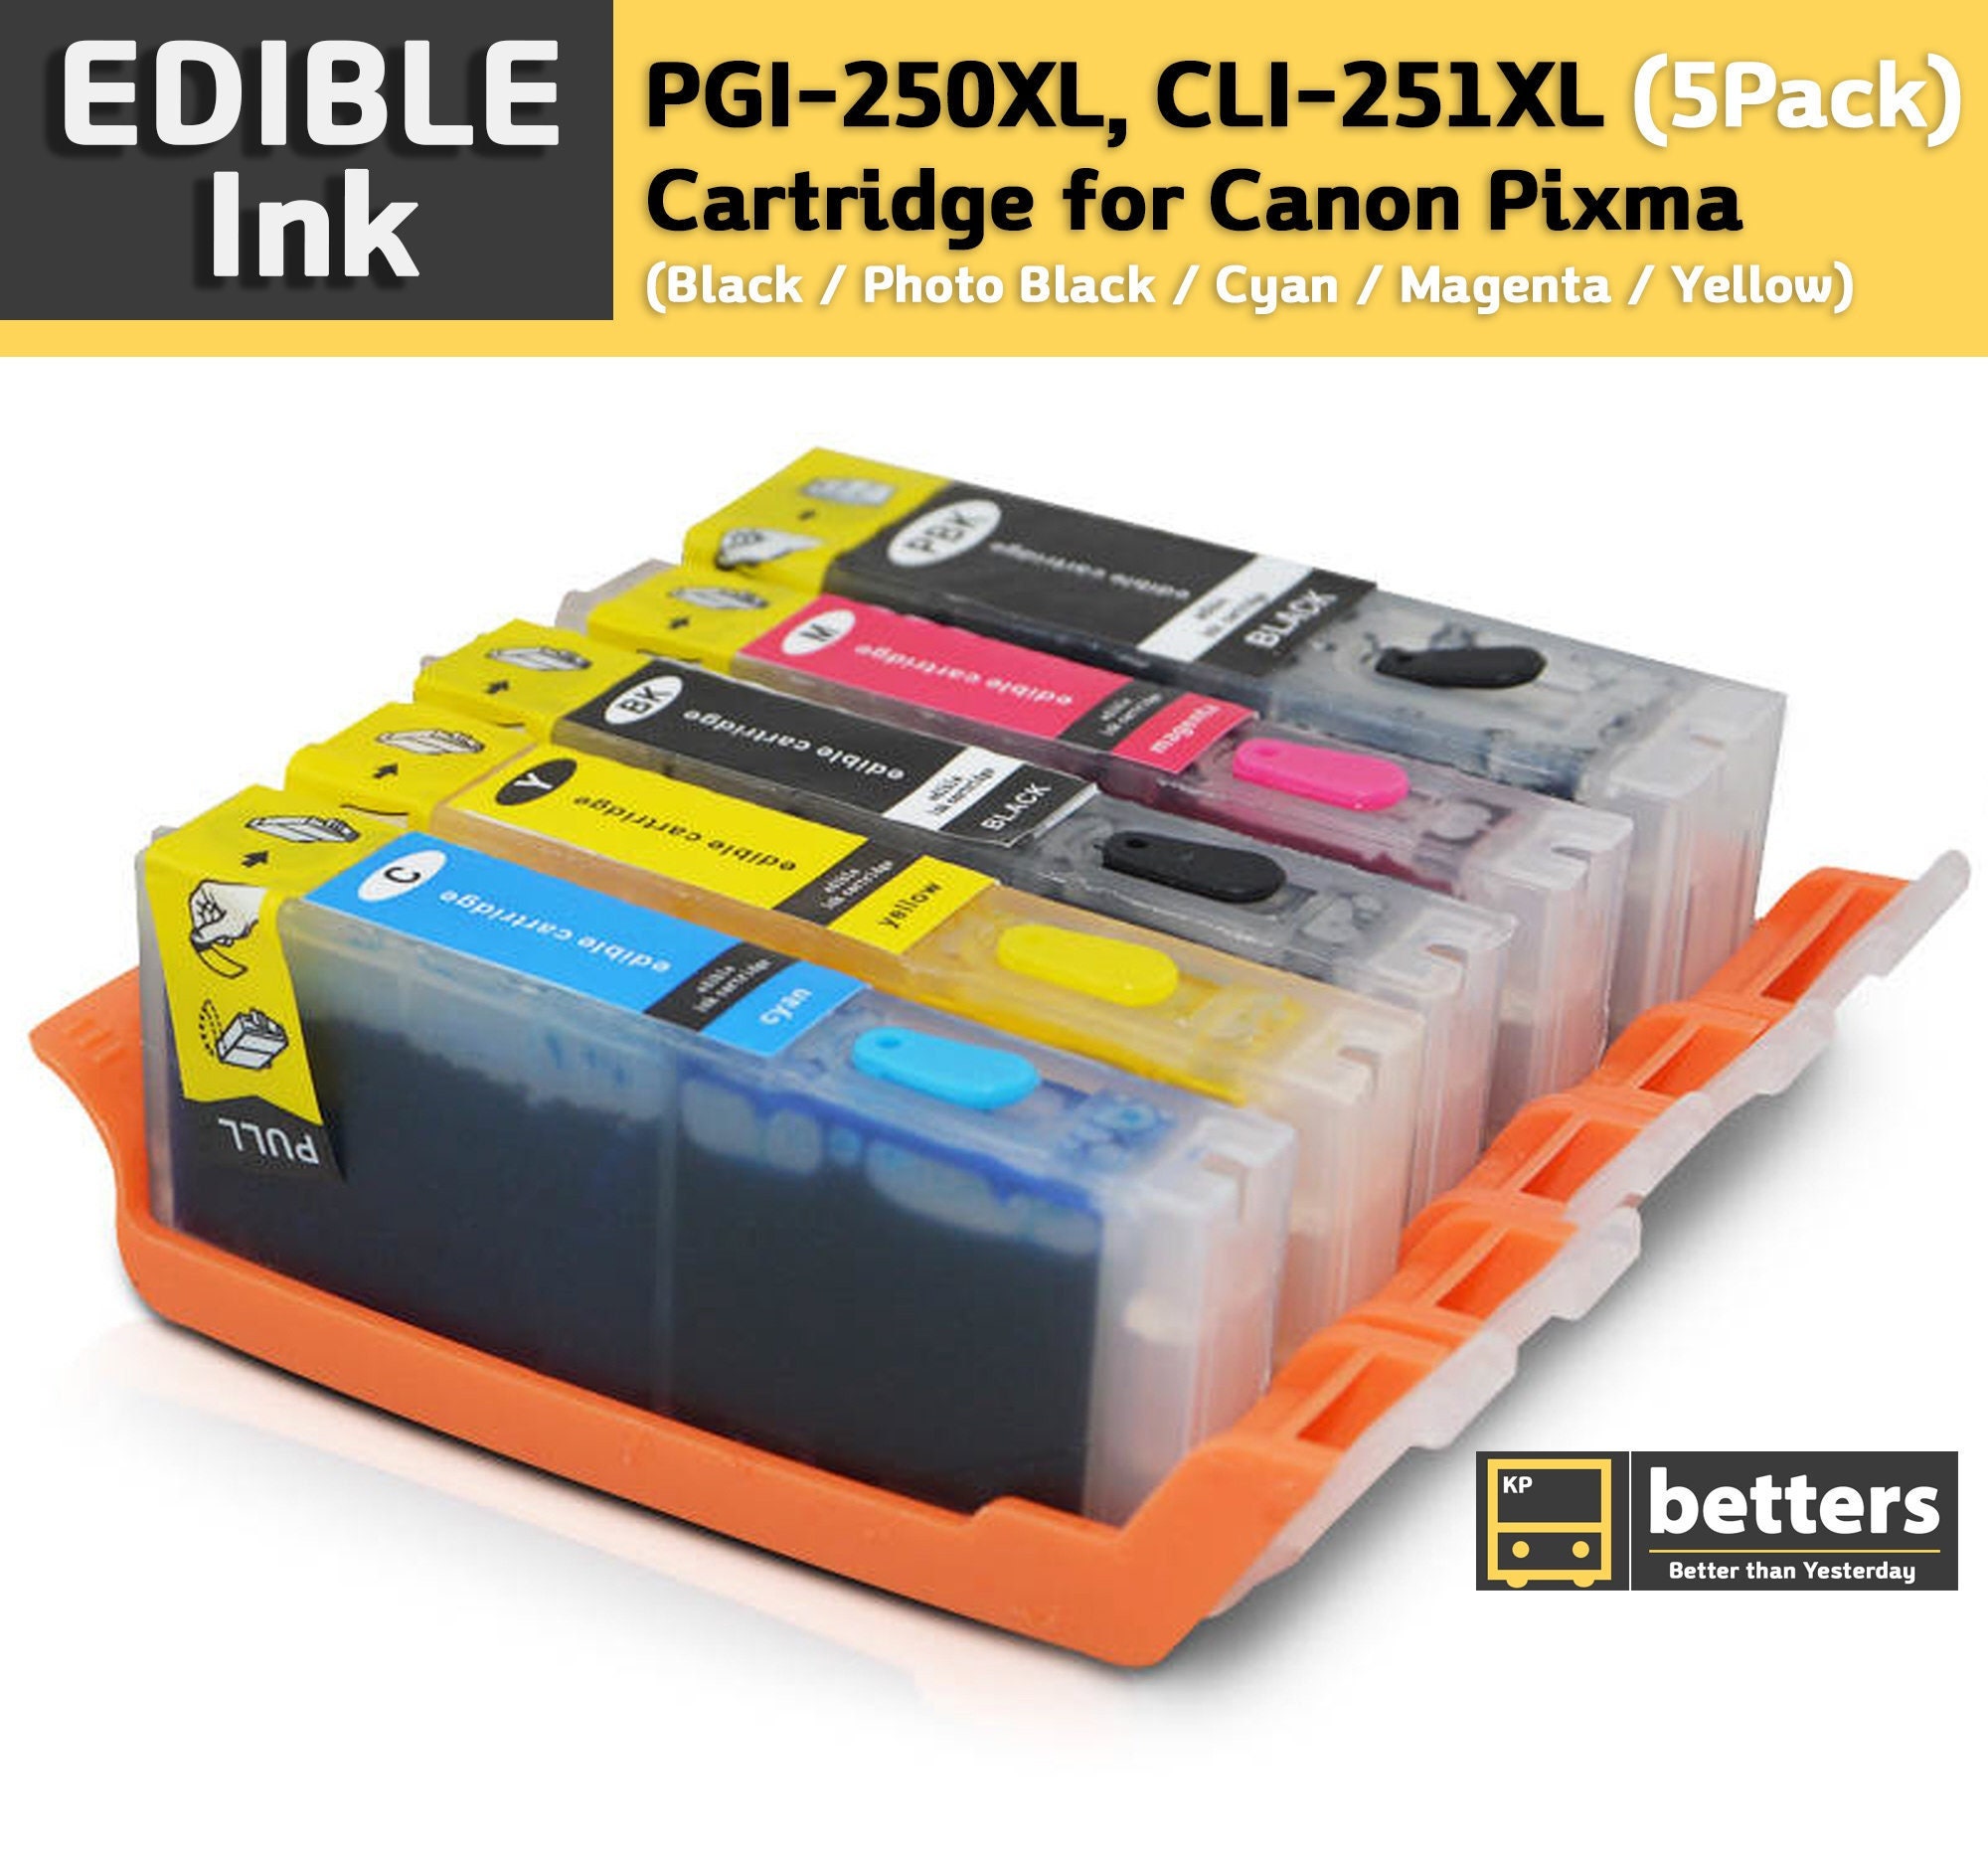 Cheap Cyan dye ink replaces Canon Pixma TR7550 - CLI-581C